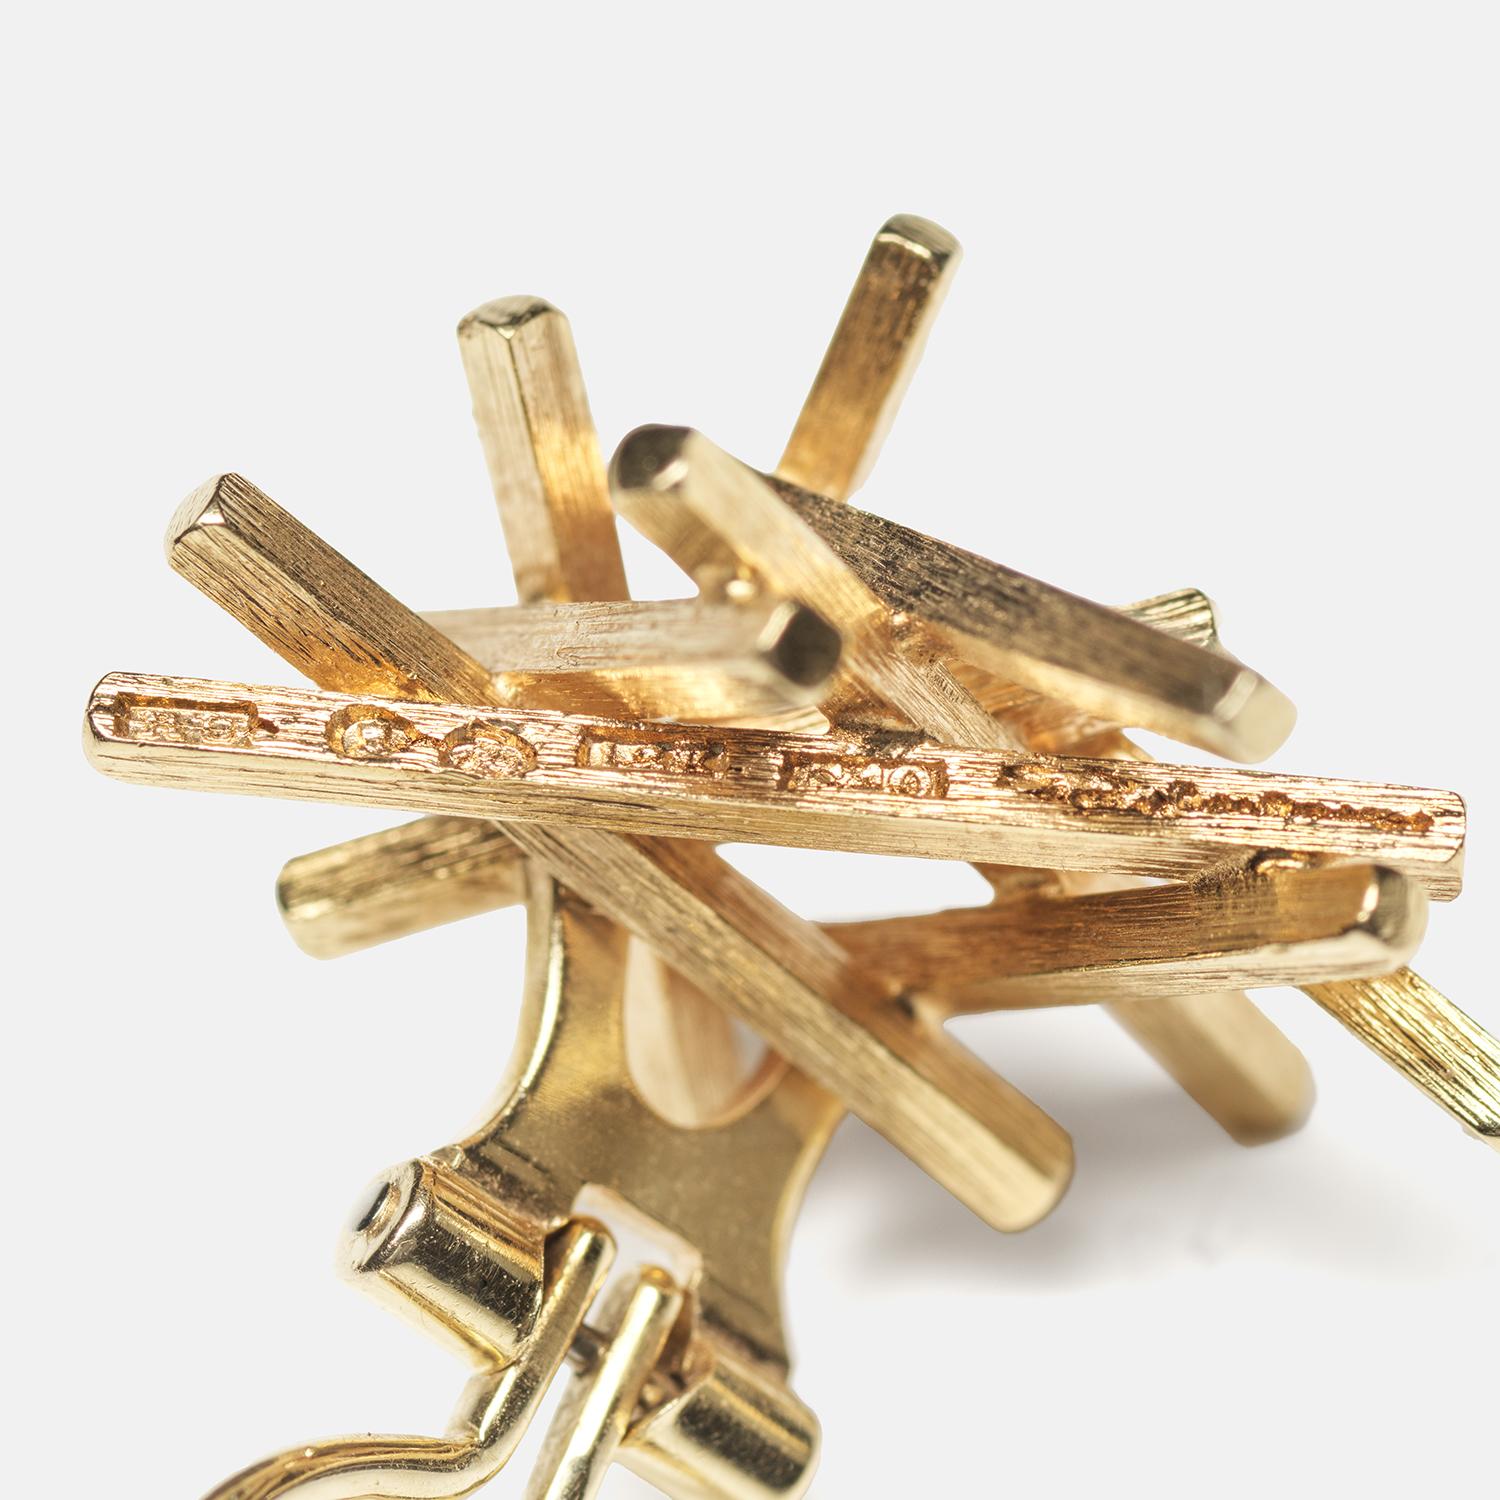 Diese Clip-Ohrringe aus 18 Karat Gold zeichnen sich durch ein dynamisches, abstraktes Bündel strukturierter Goldstäbchen aus, die ein kompliziertes, nestartiges Design bilden. Das Gold hat eine reiche, gebürstete Oberfläche, die den Ohrringen Tiefe